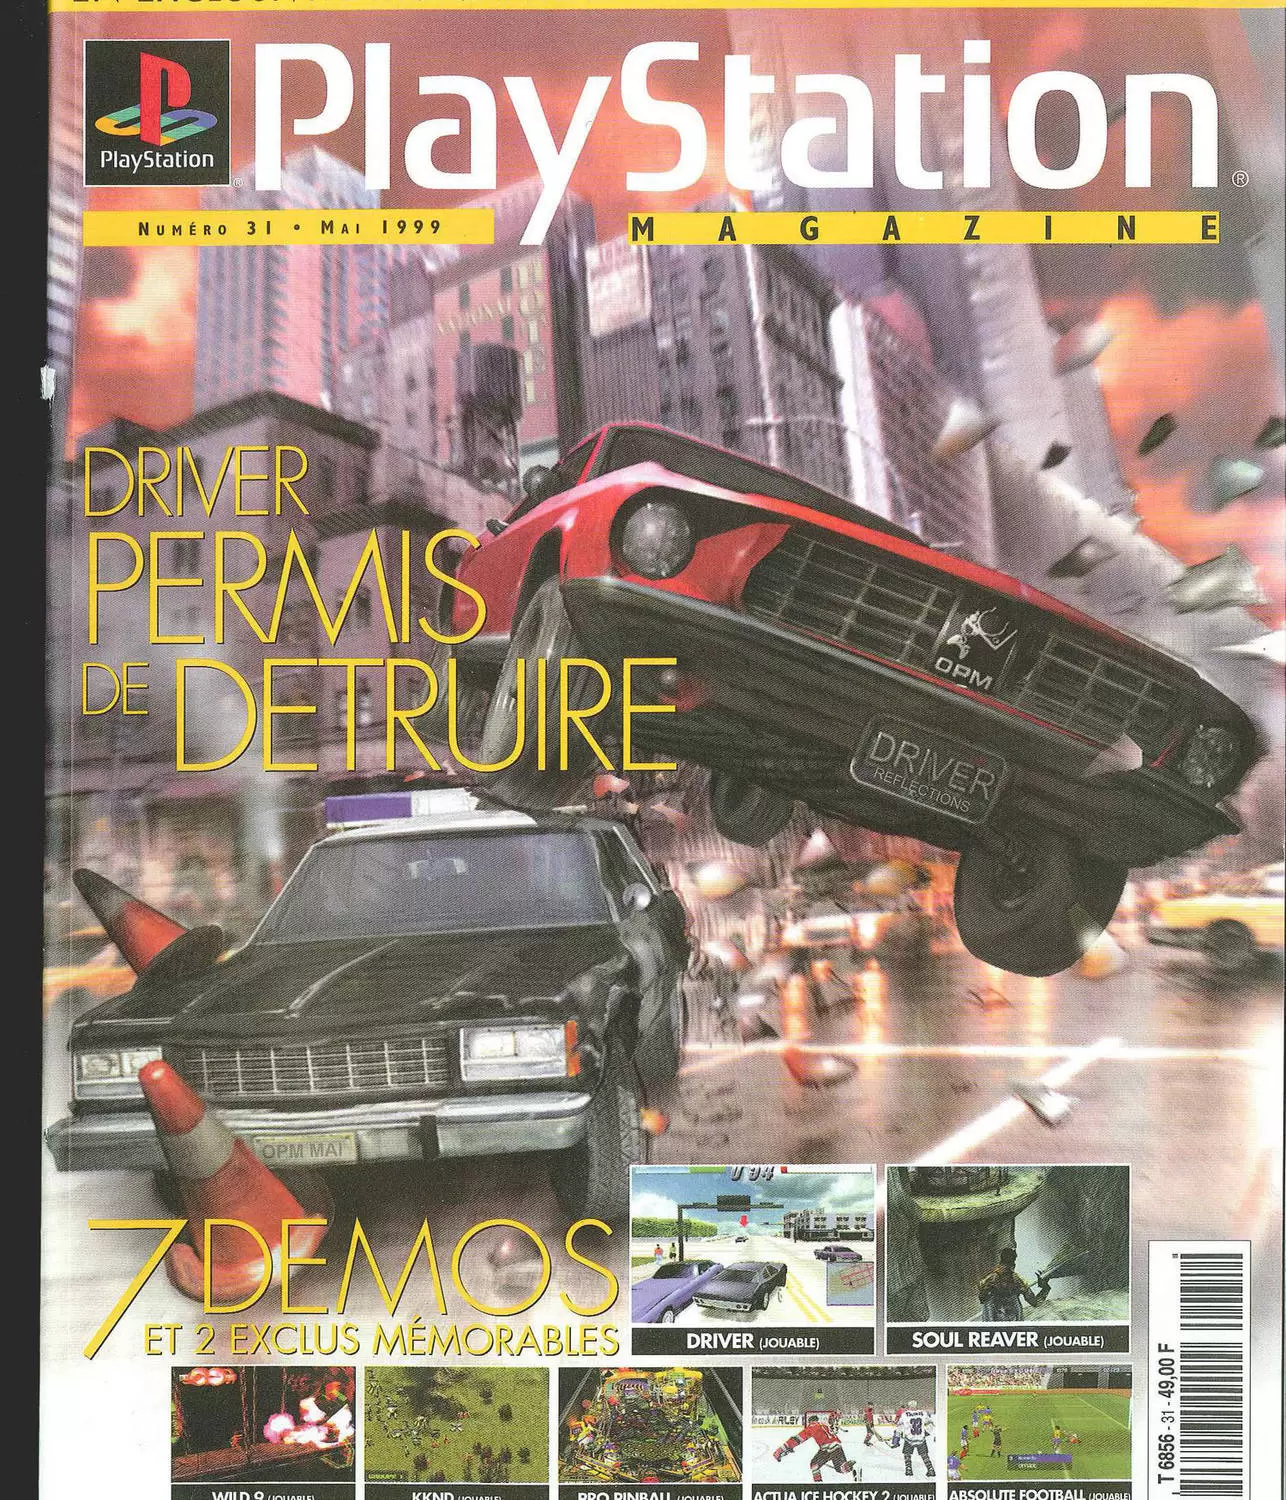 Playstation Magazine - Playstation Magazine #31